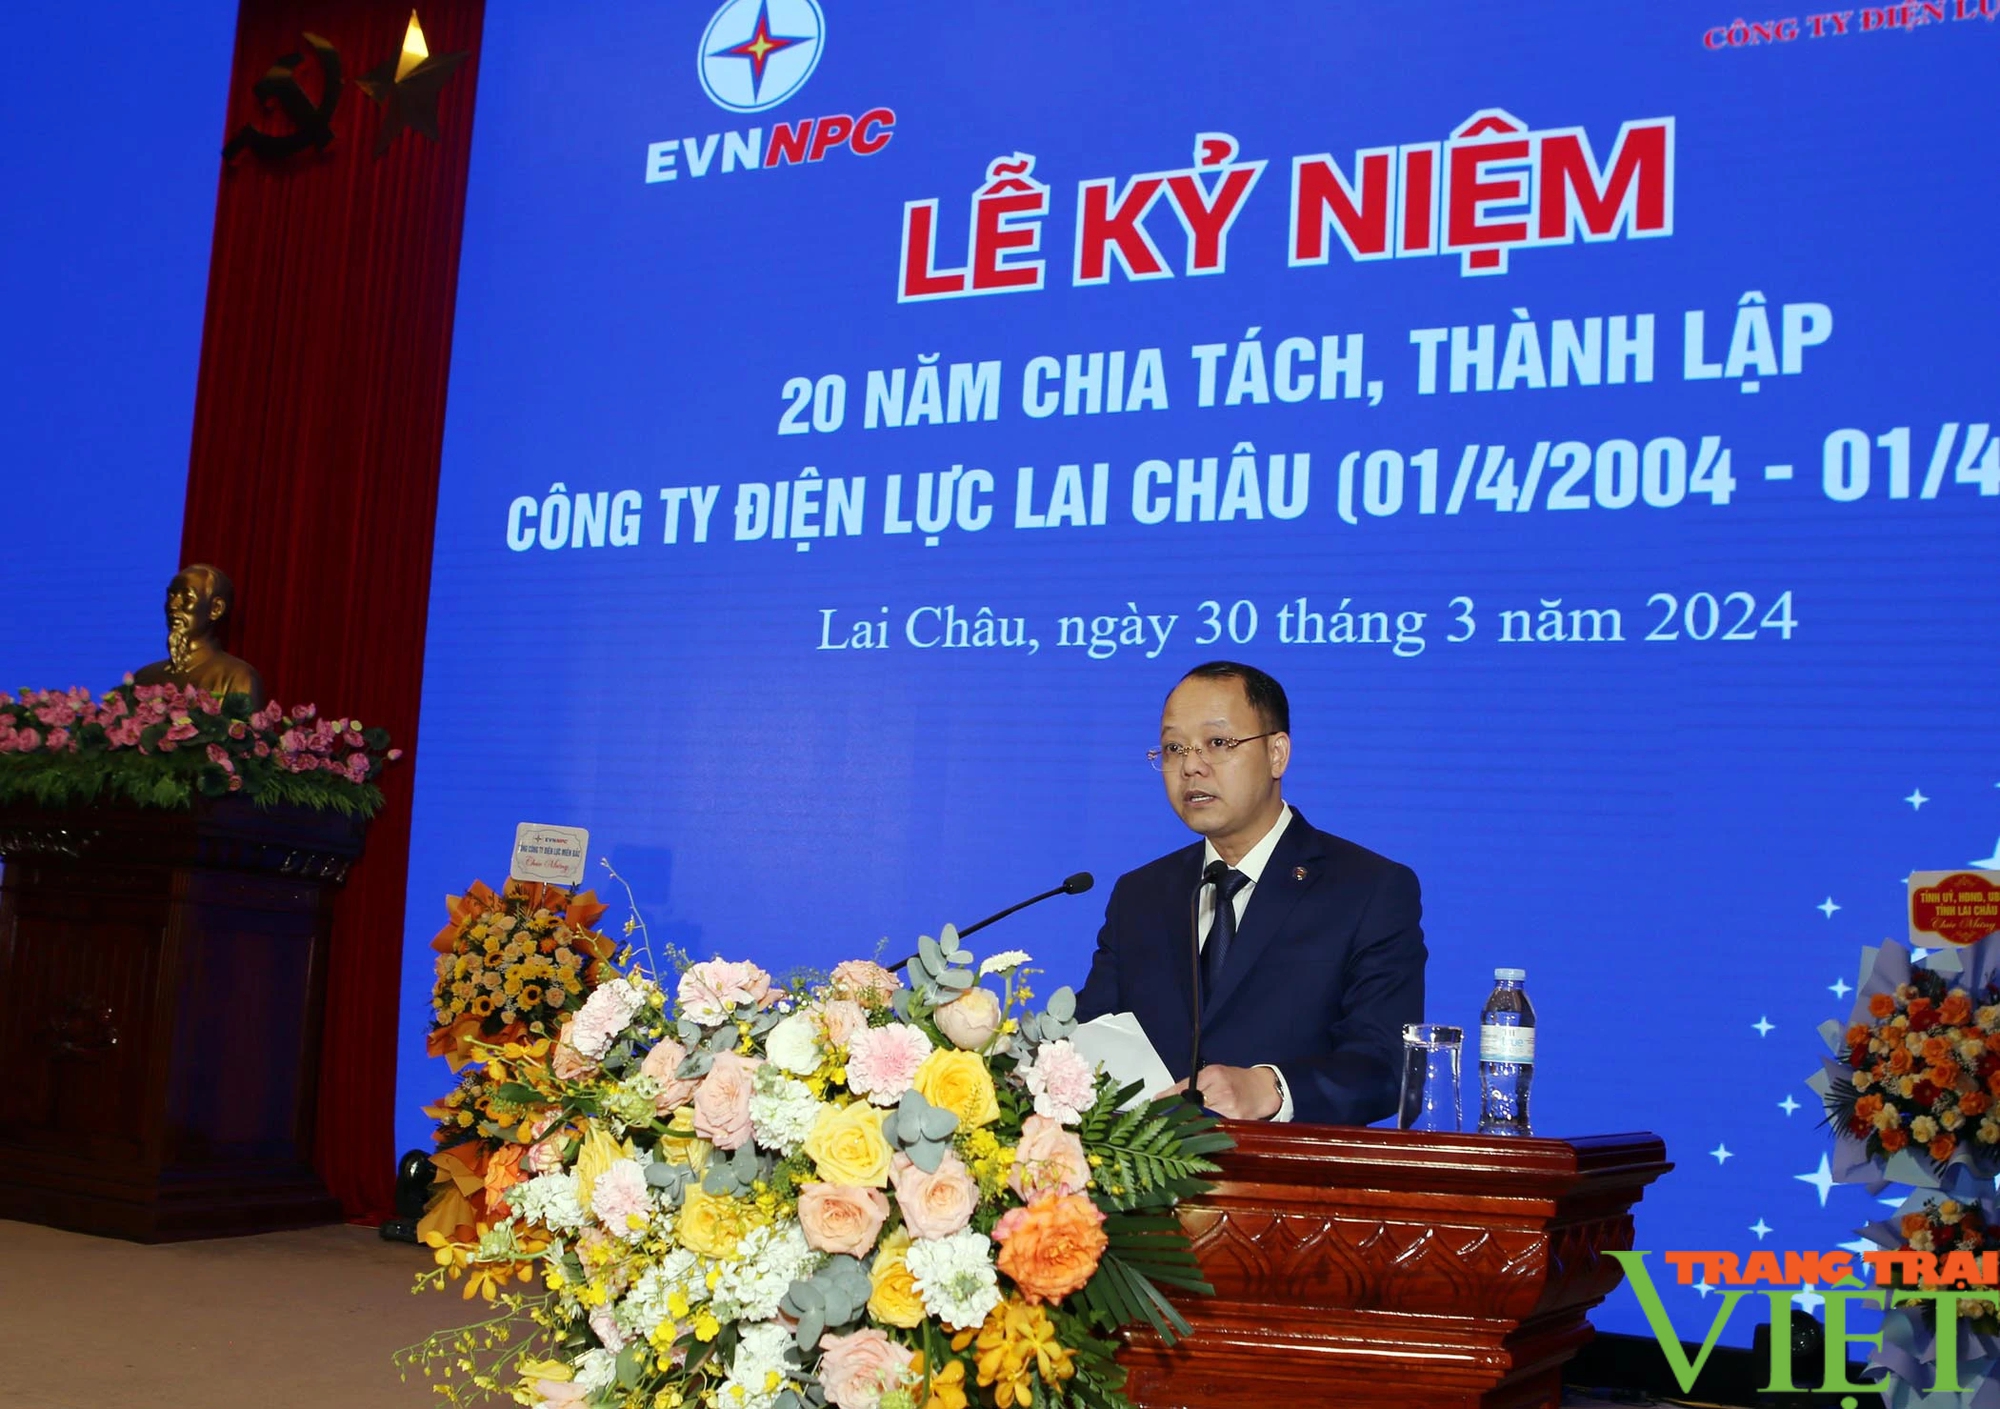 Công ty Điện lực Lai Châu: Những bước tiến vượt bậc sau 20 năm chia tách và thành lập- Ảnh 2.